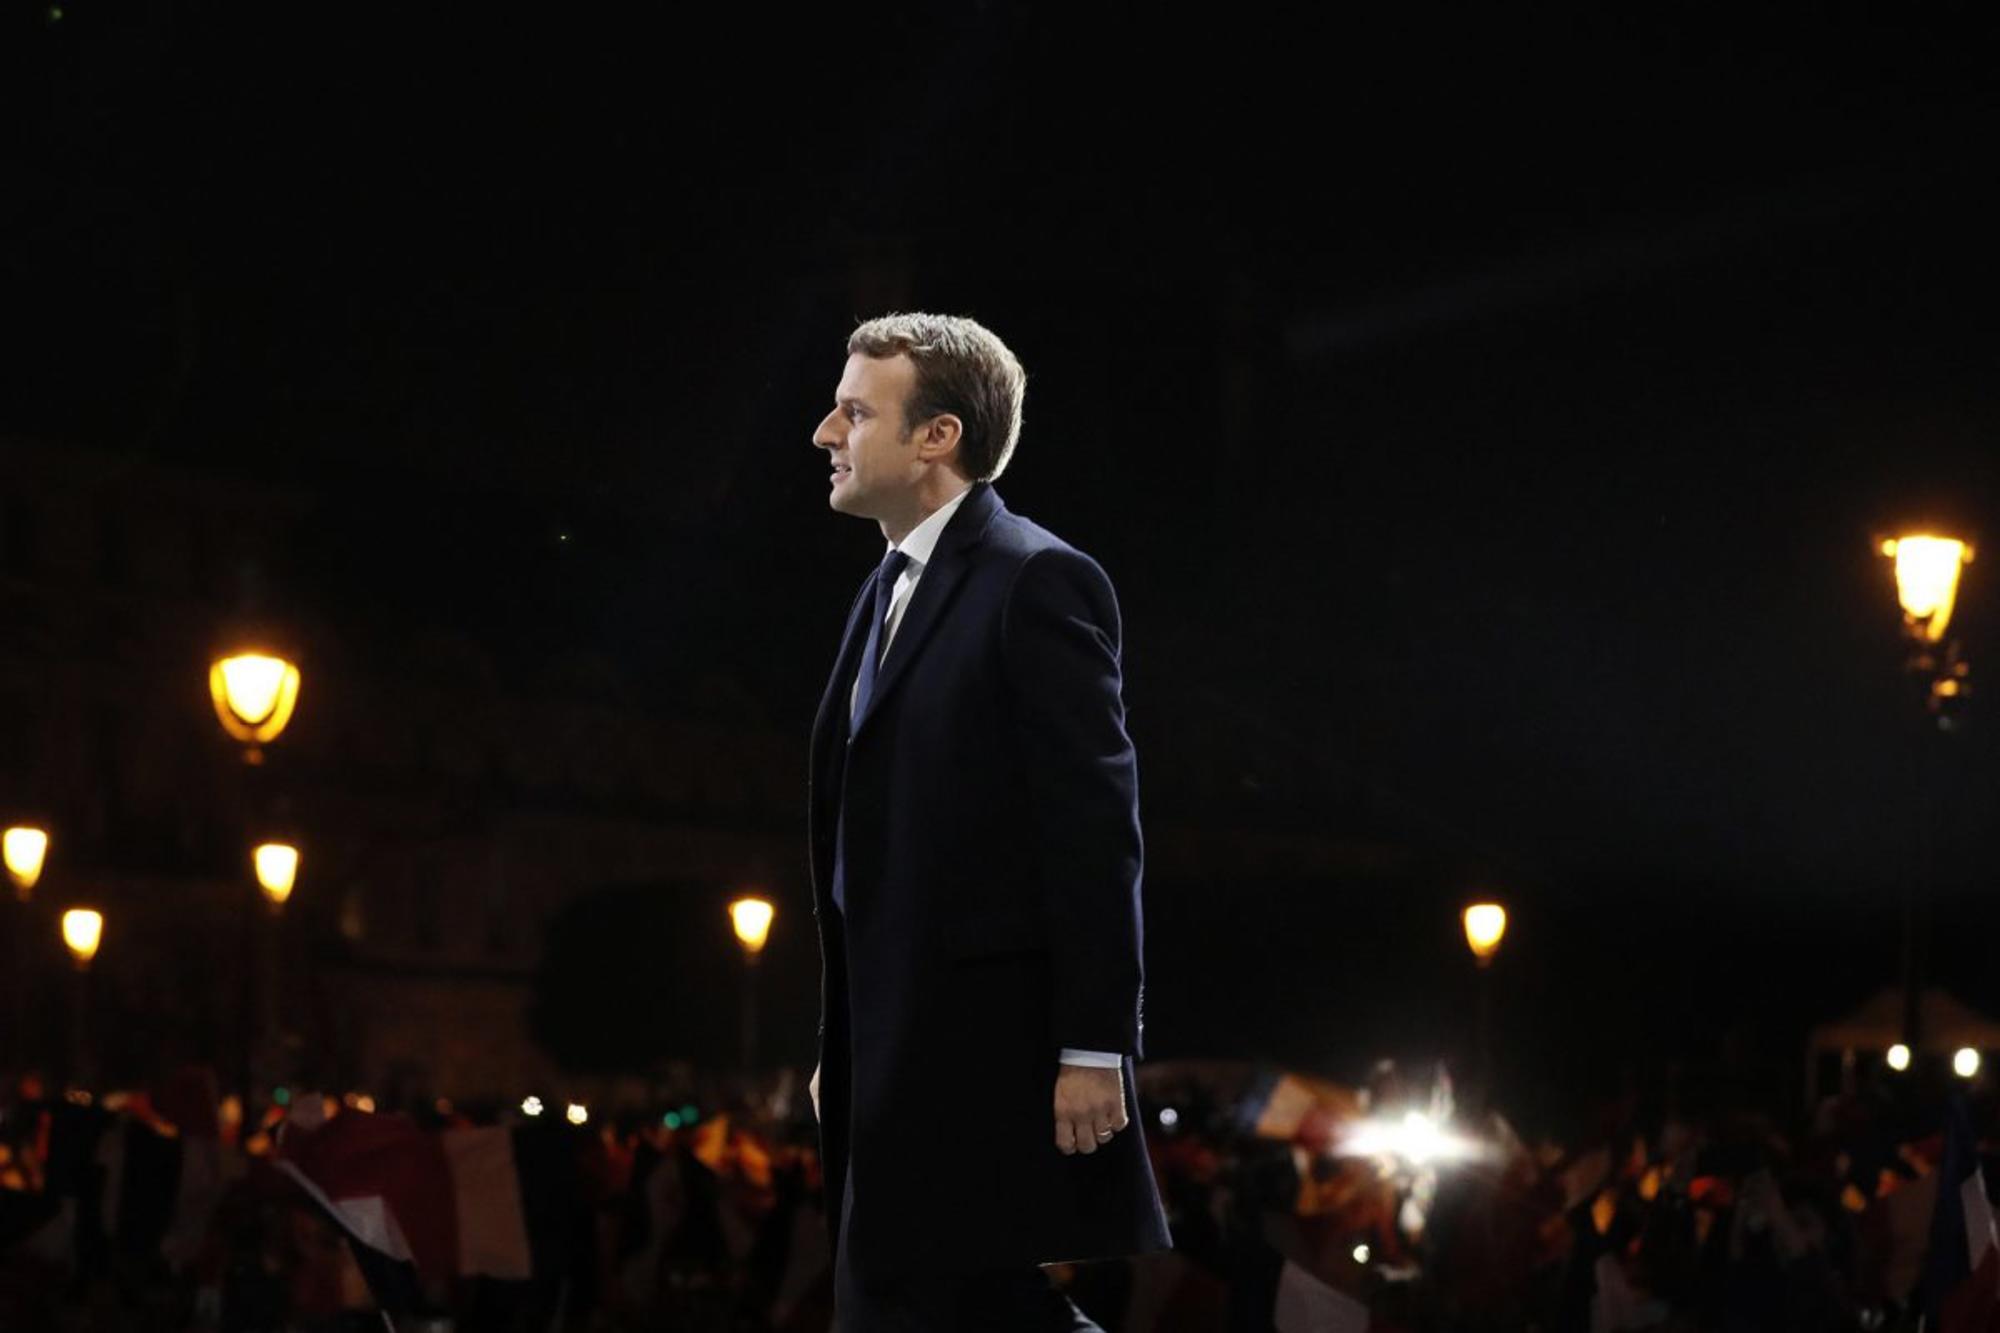 Emmanuel Macron 1